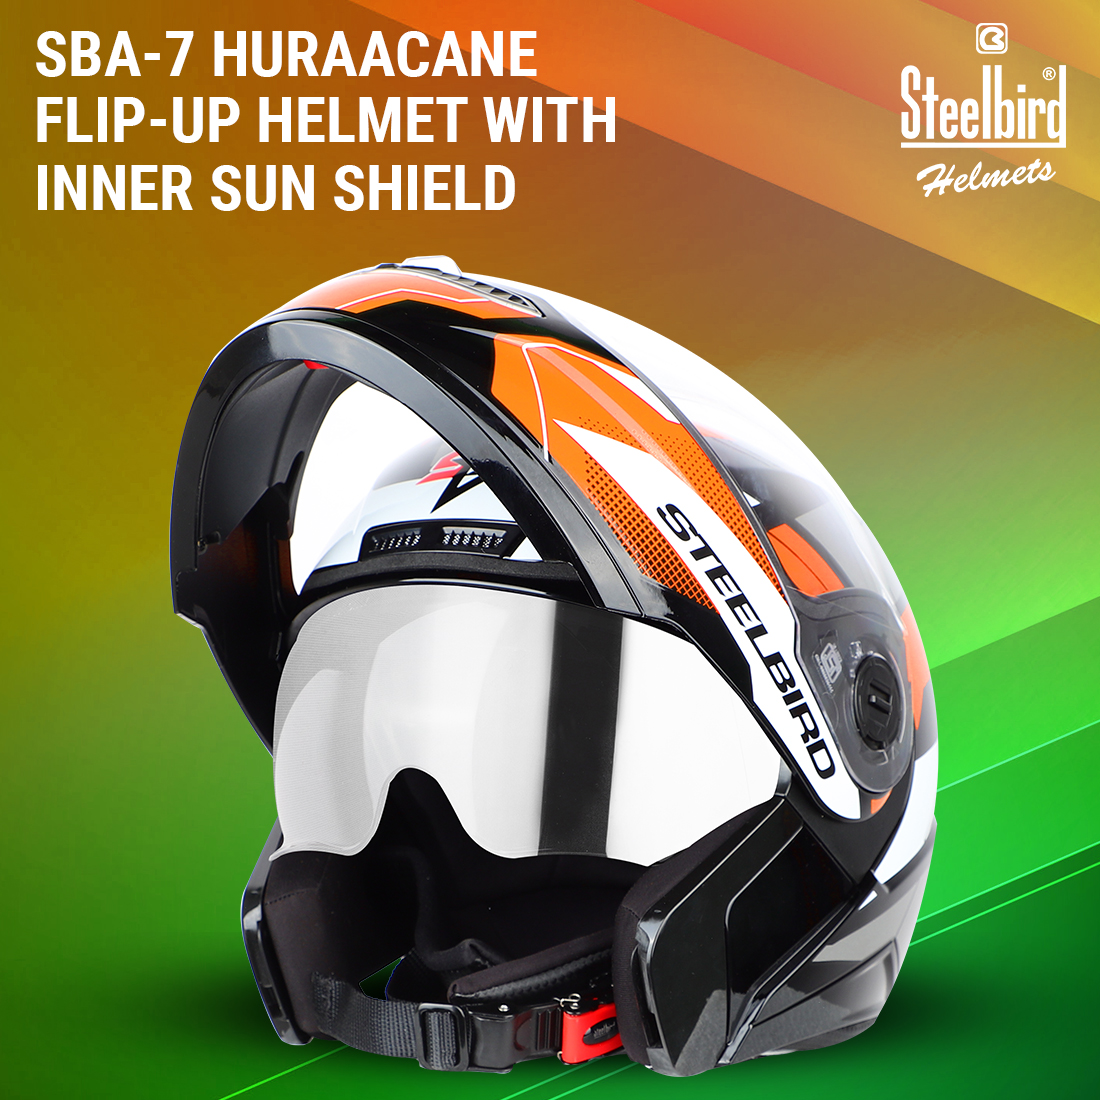 Steelbird SBA-7 Huracan ISI Certified Flip-Up Helmet For Men And Women With Inner Sun Shield (Matt Black Orange)